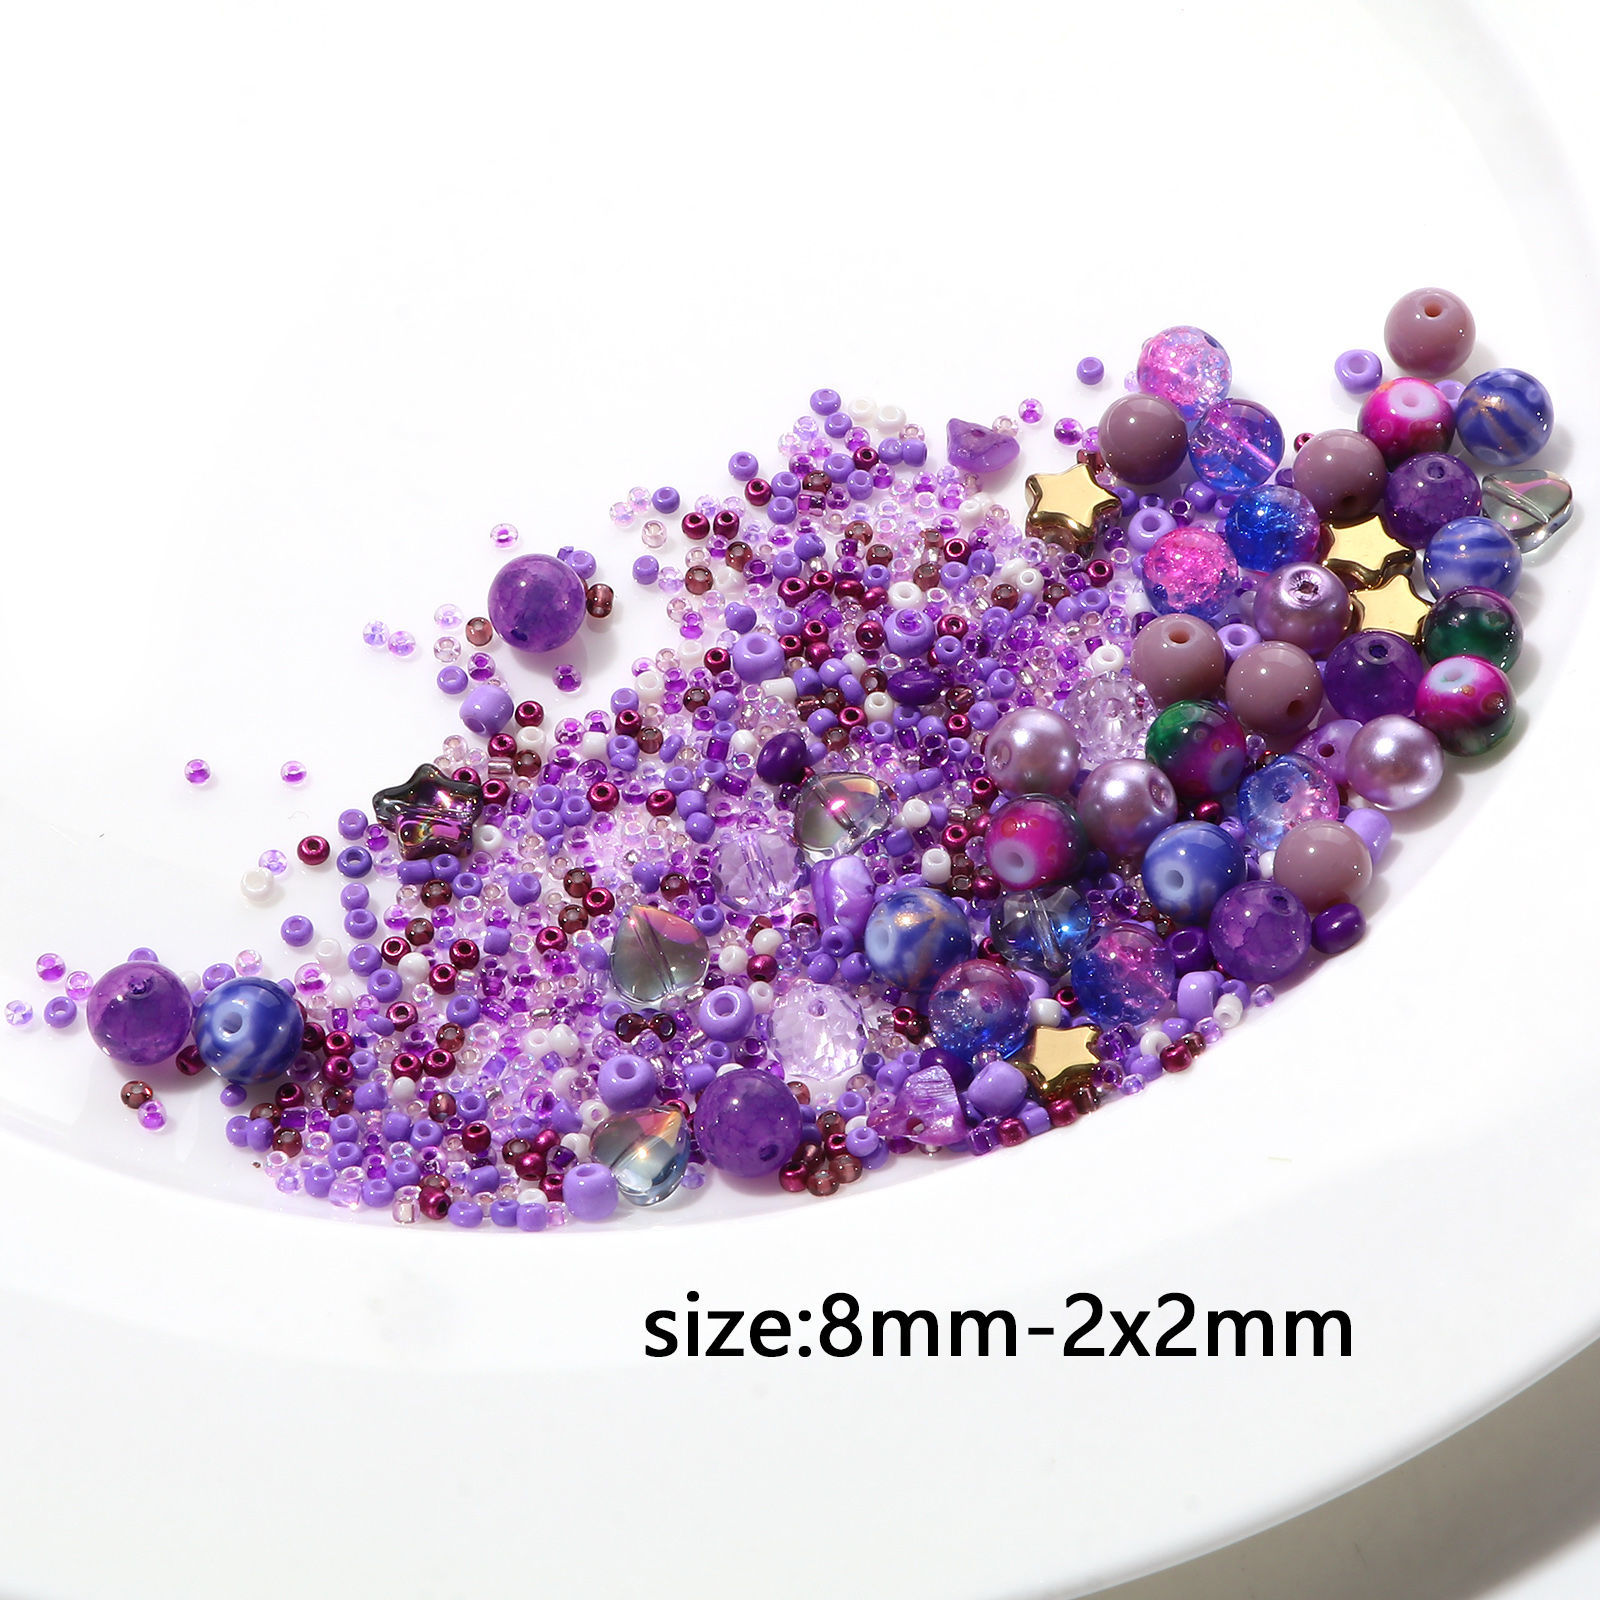 Bild von Glas Runde Perlen Chip Perlen Rocailles DIY Kit Set Mehrfarbig gemischt ca. 8 mm Durchmesser. - 2 x 2 mm